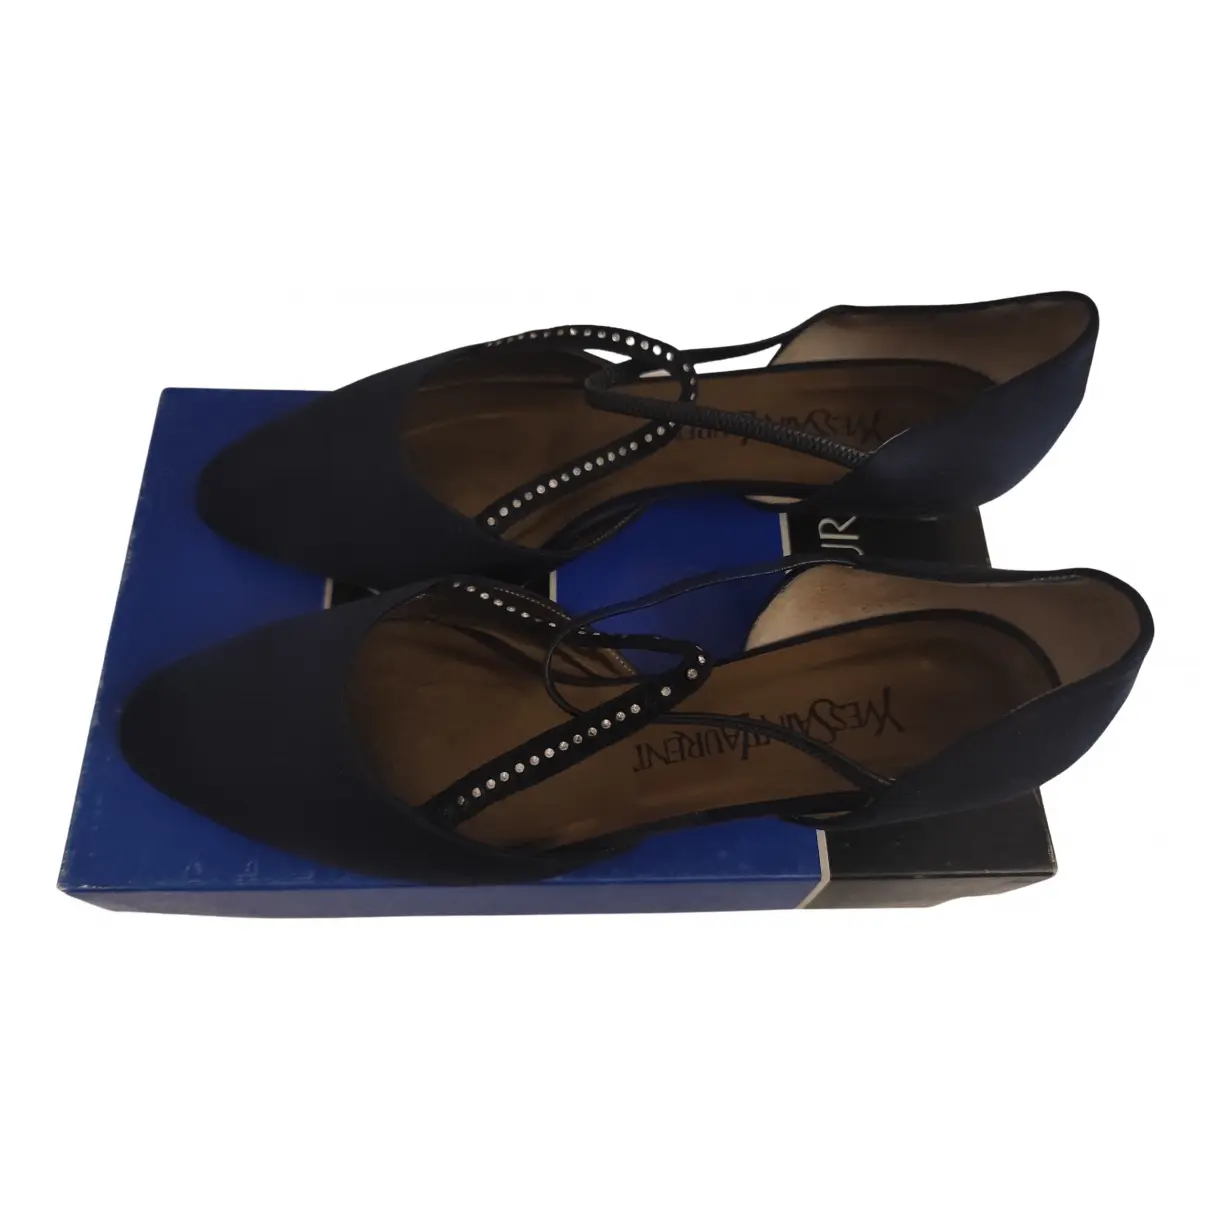 Velvet heels Yves Saint Laurent - Vintage